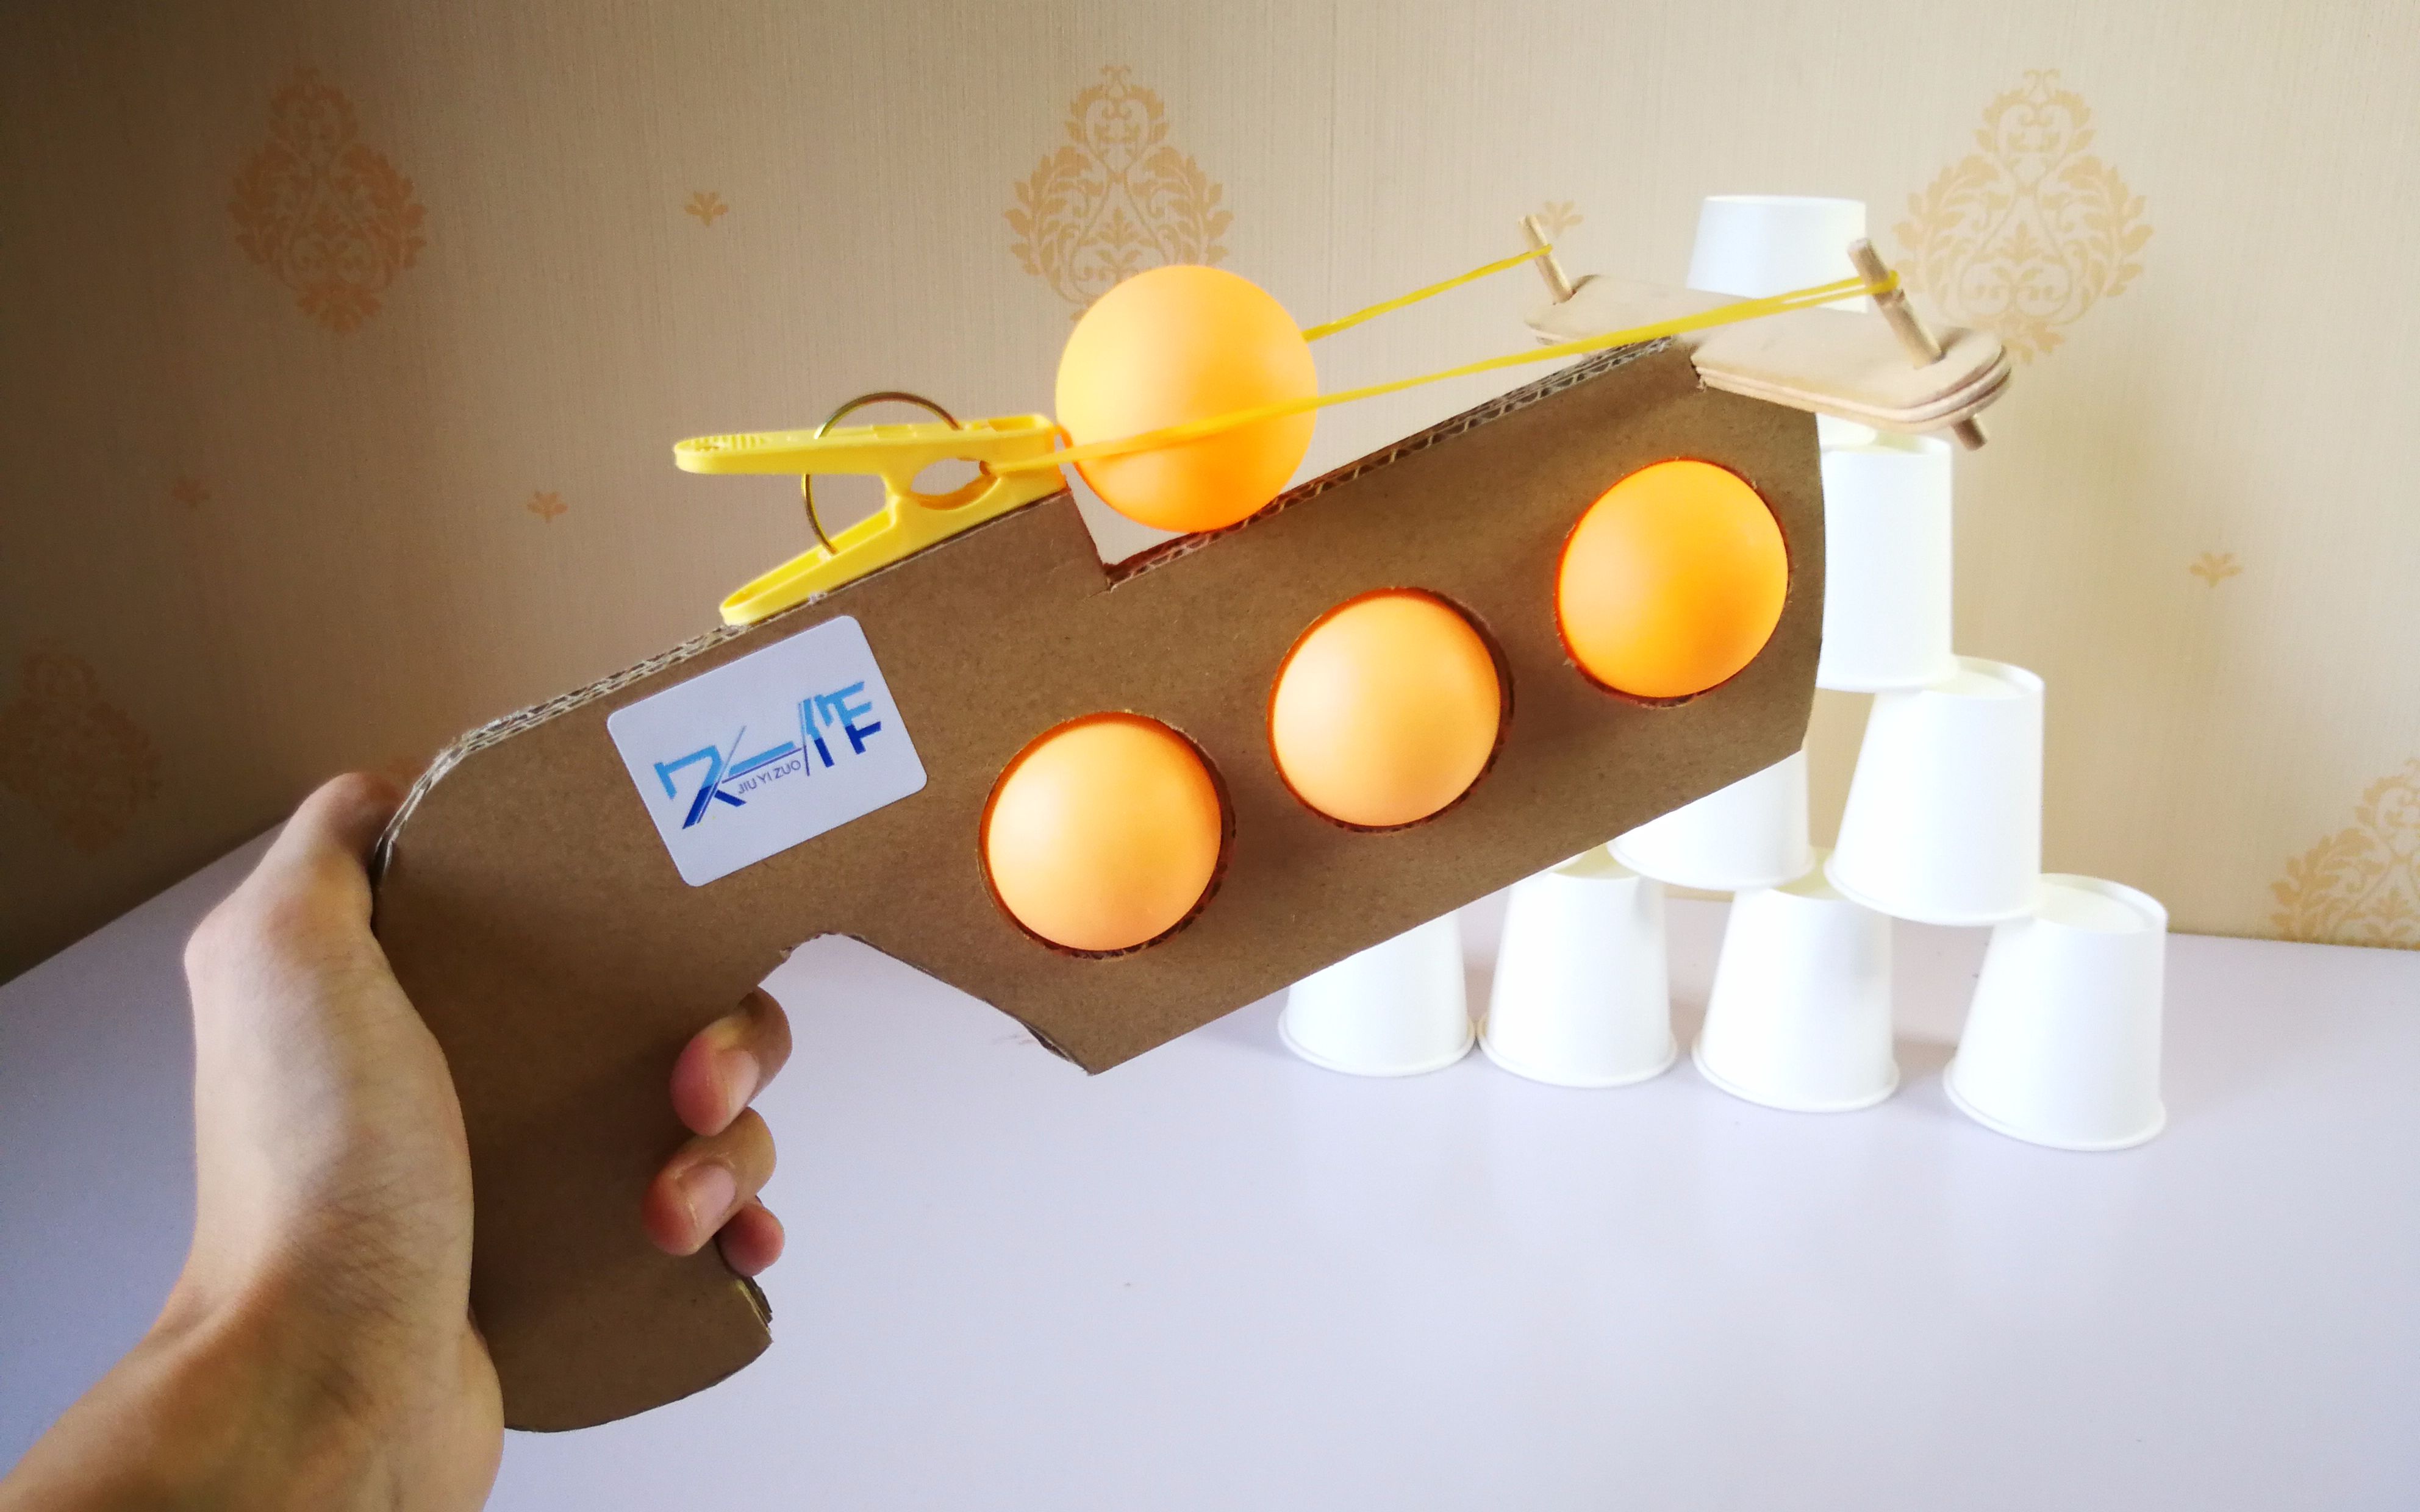 《乒乓球捡球机器人》-傅宇桢、管一安-作品复盘-2023.3.11 – MG-资源库